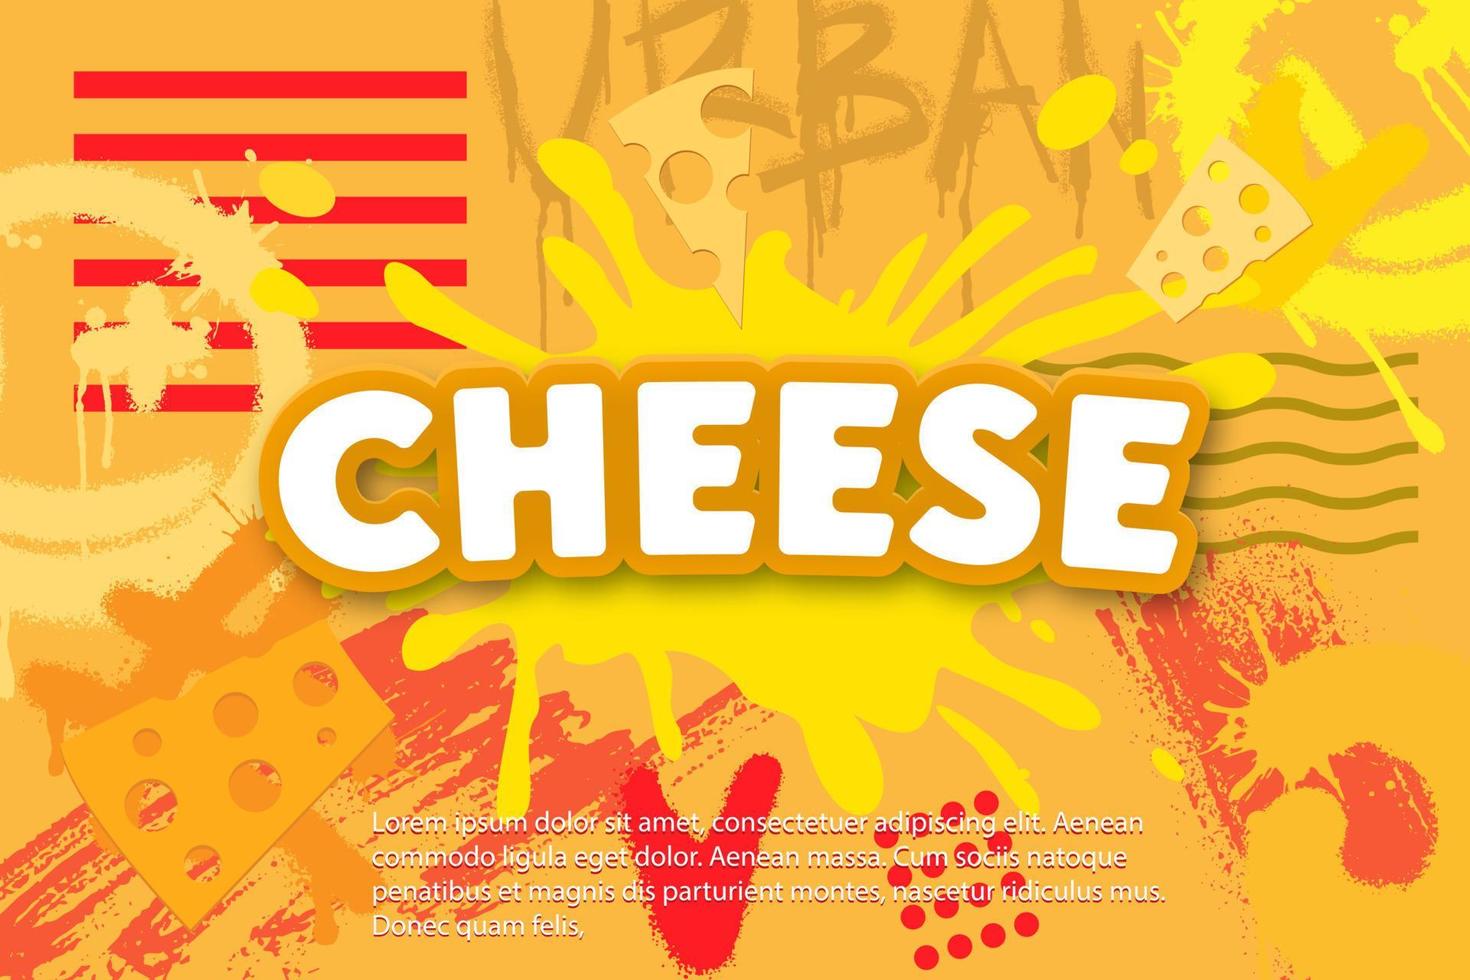 fromage étiquette éco nourriture affiche, bannière menu produit. vecteur illustration.